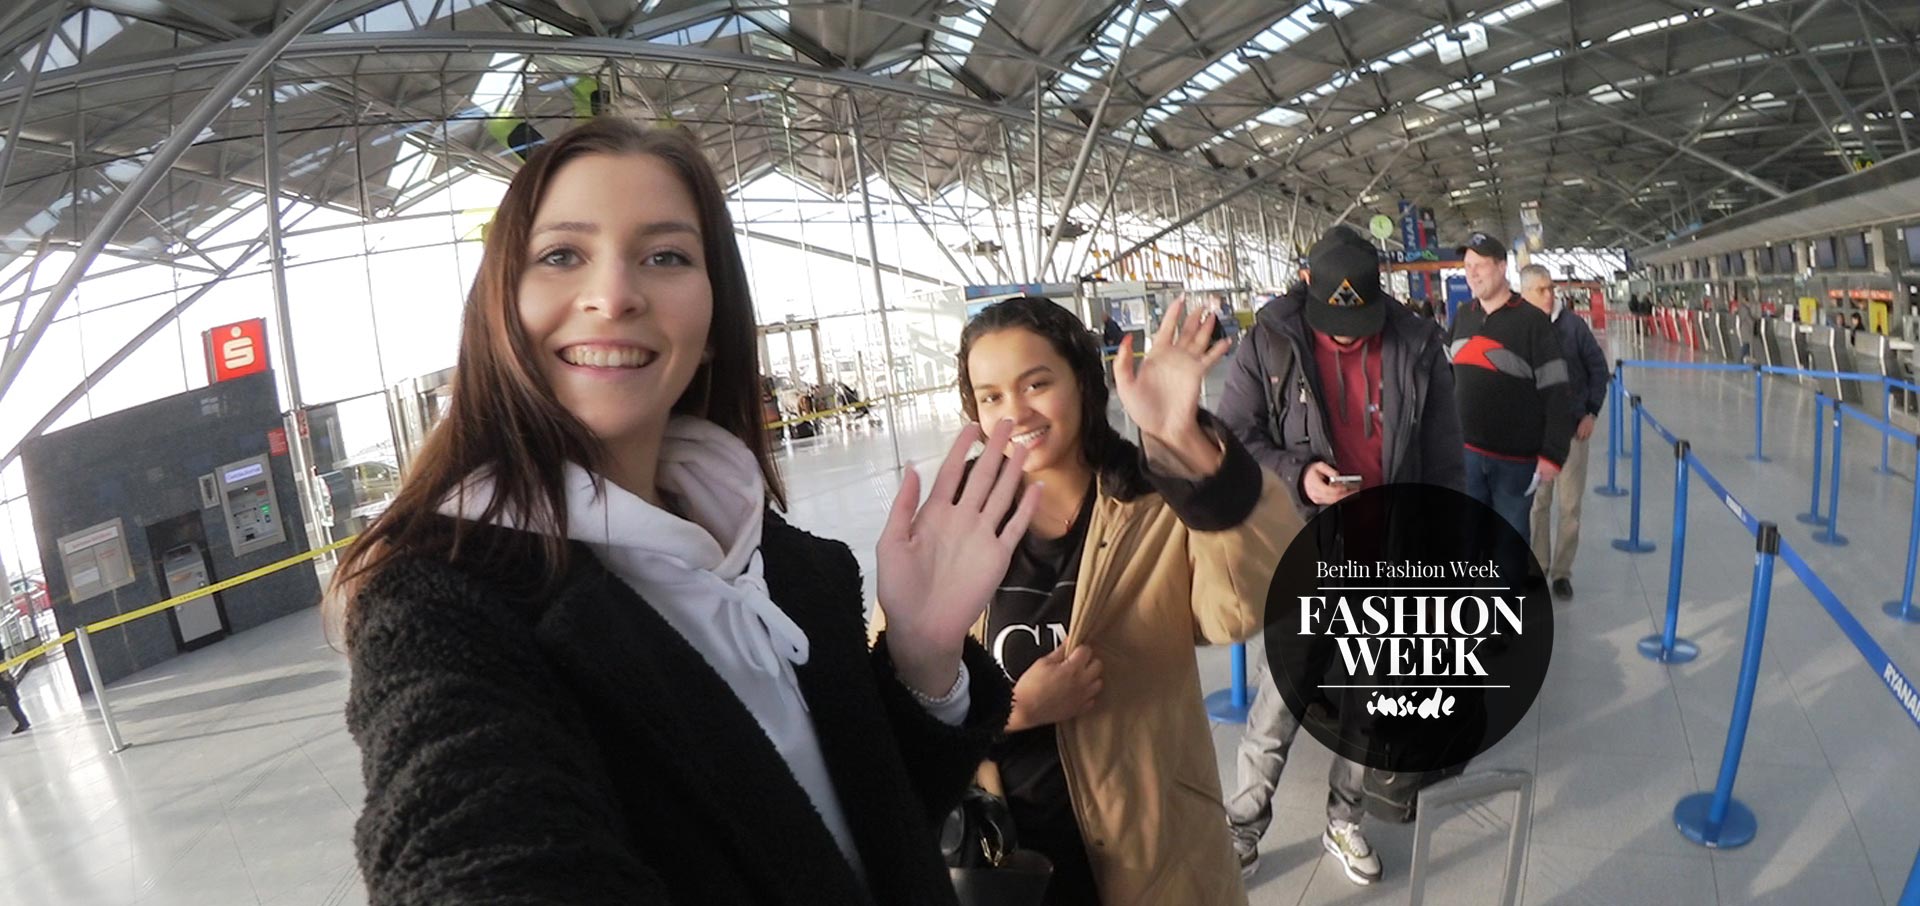 fashion-week-berlin-anreise-mode-flughafen